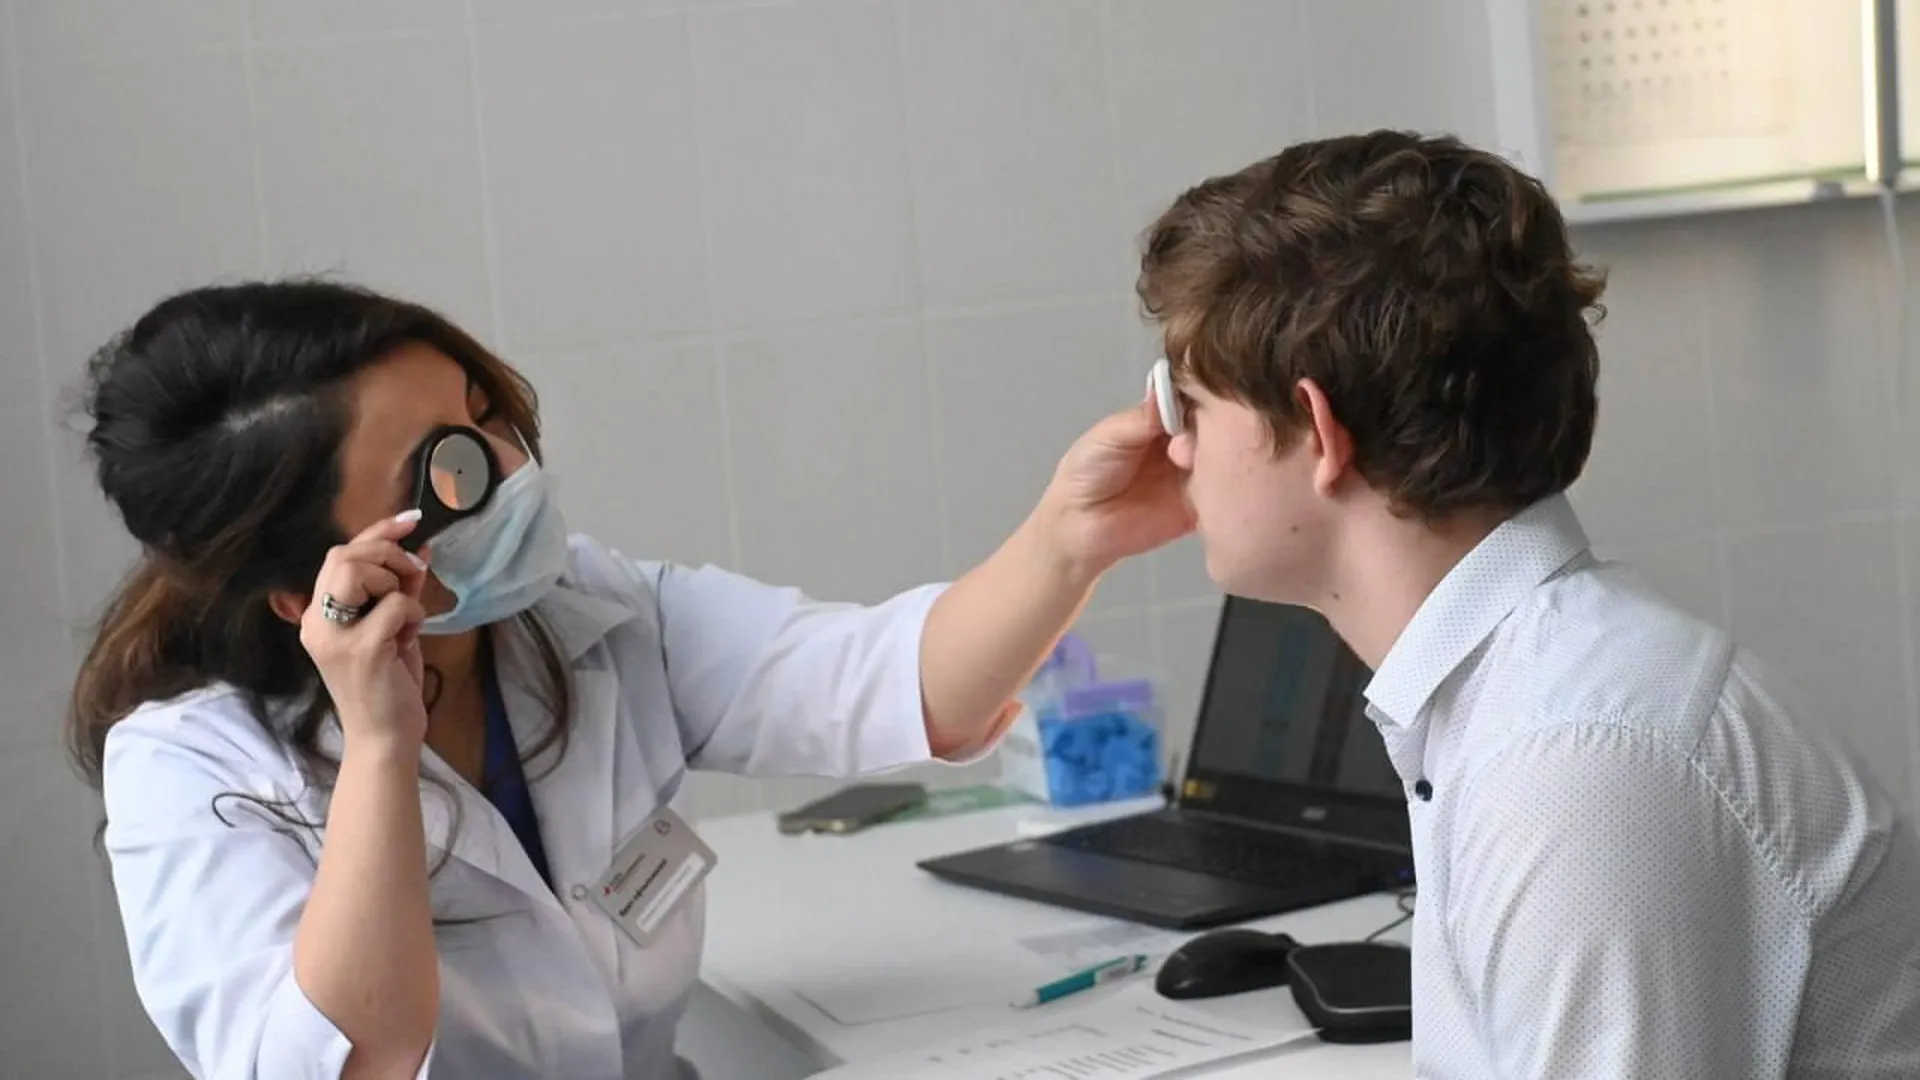 Кабинеты доврачебной проверки зрения открылись в детских поликлиниках Московской области